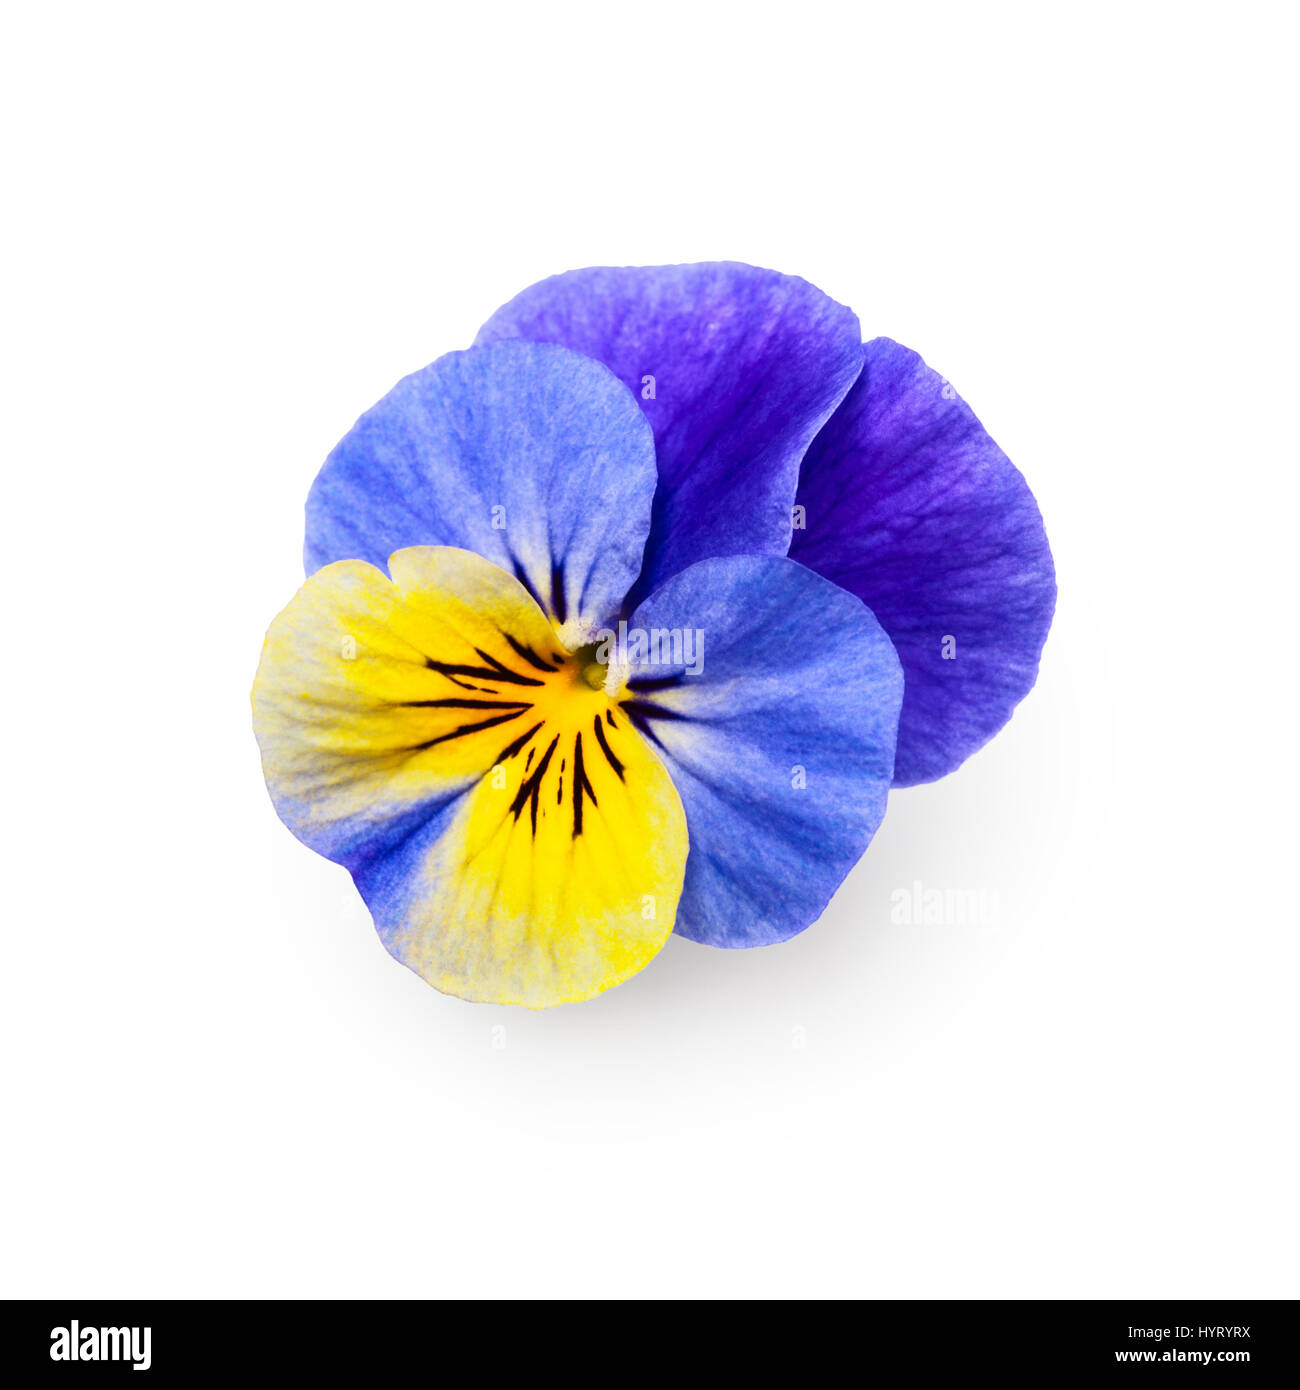 Pansy viola tricolore fiore isolato su sfondo bianco percorso di clipping incluso, vista dall'alto Foto Stock